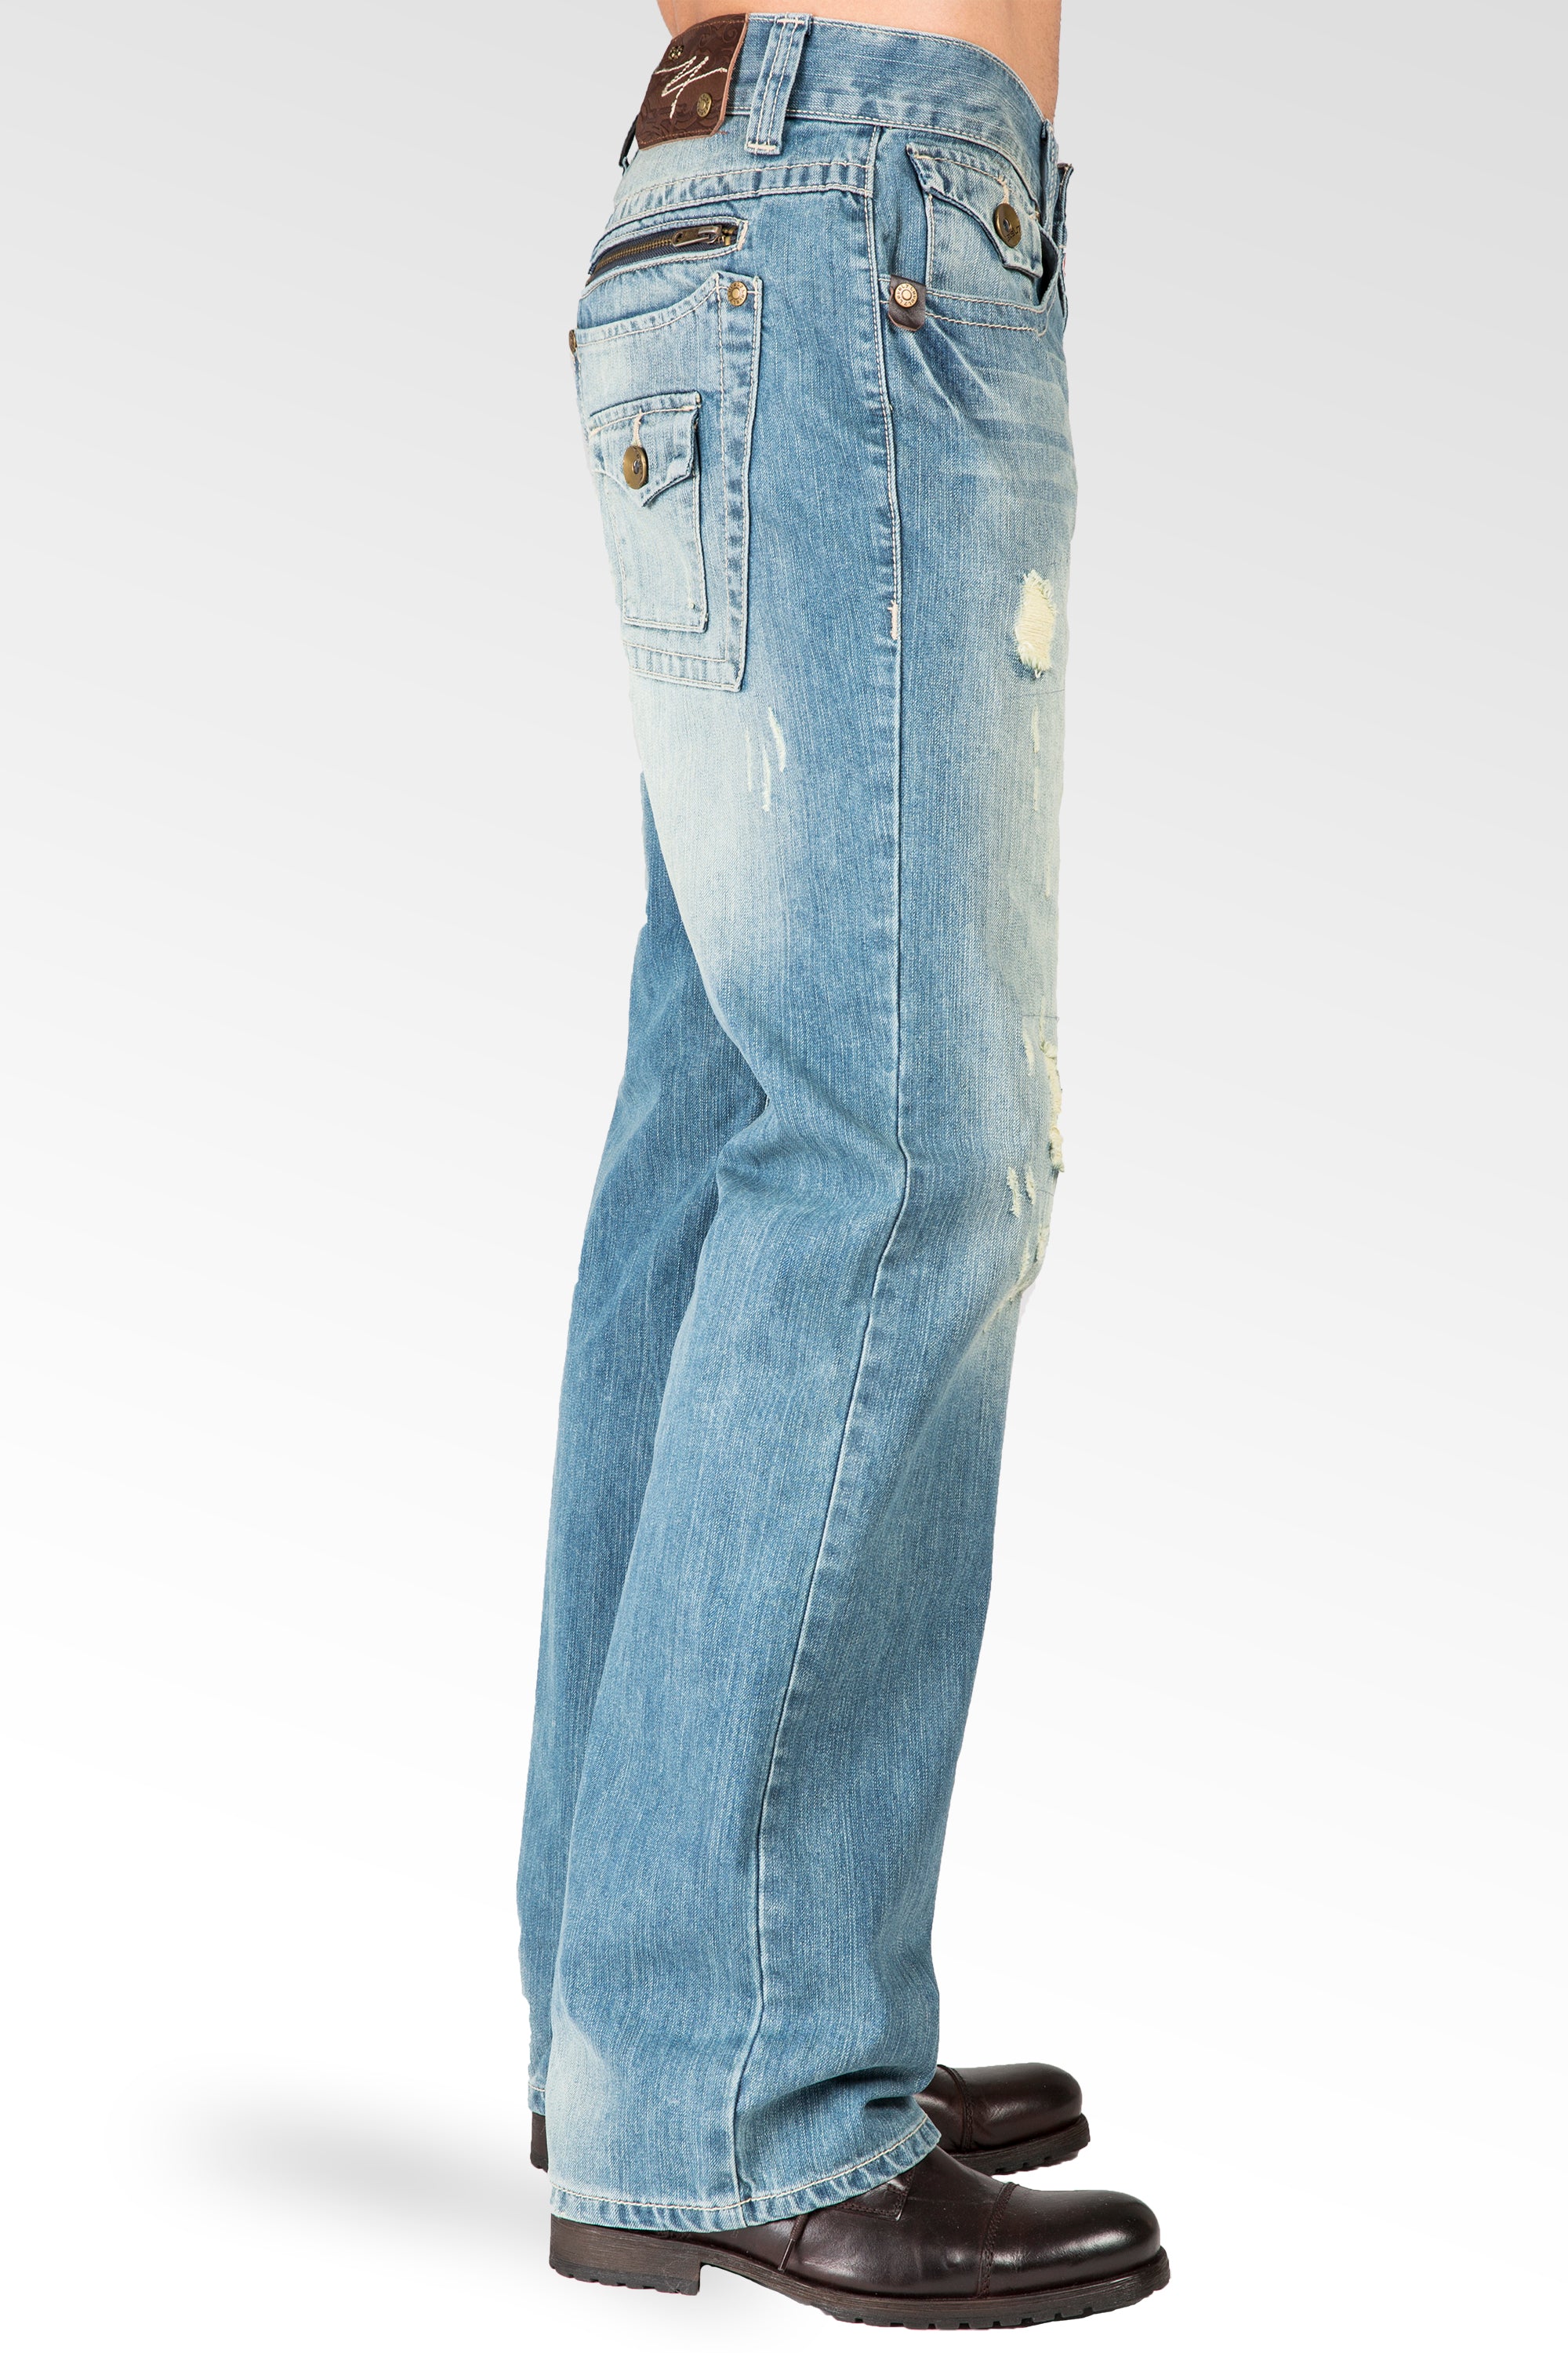 Level 7 Men's Zipper Pocket Relaxed Straight leg Coated Black Jeans Premium  Denim – Level 7 Jeans